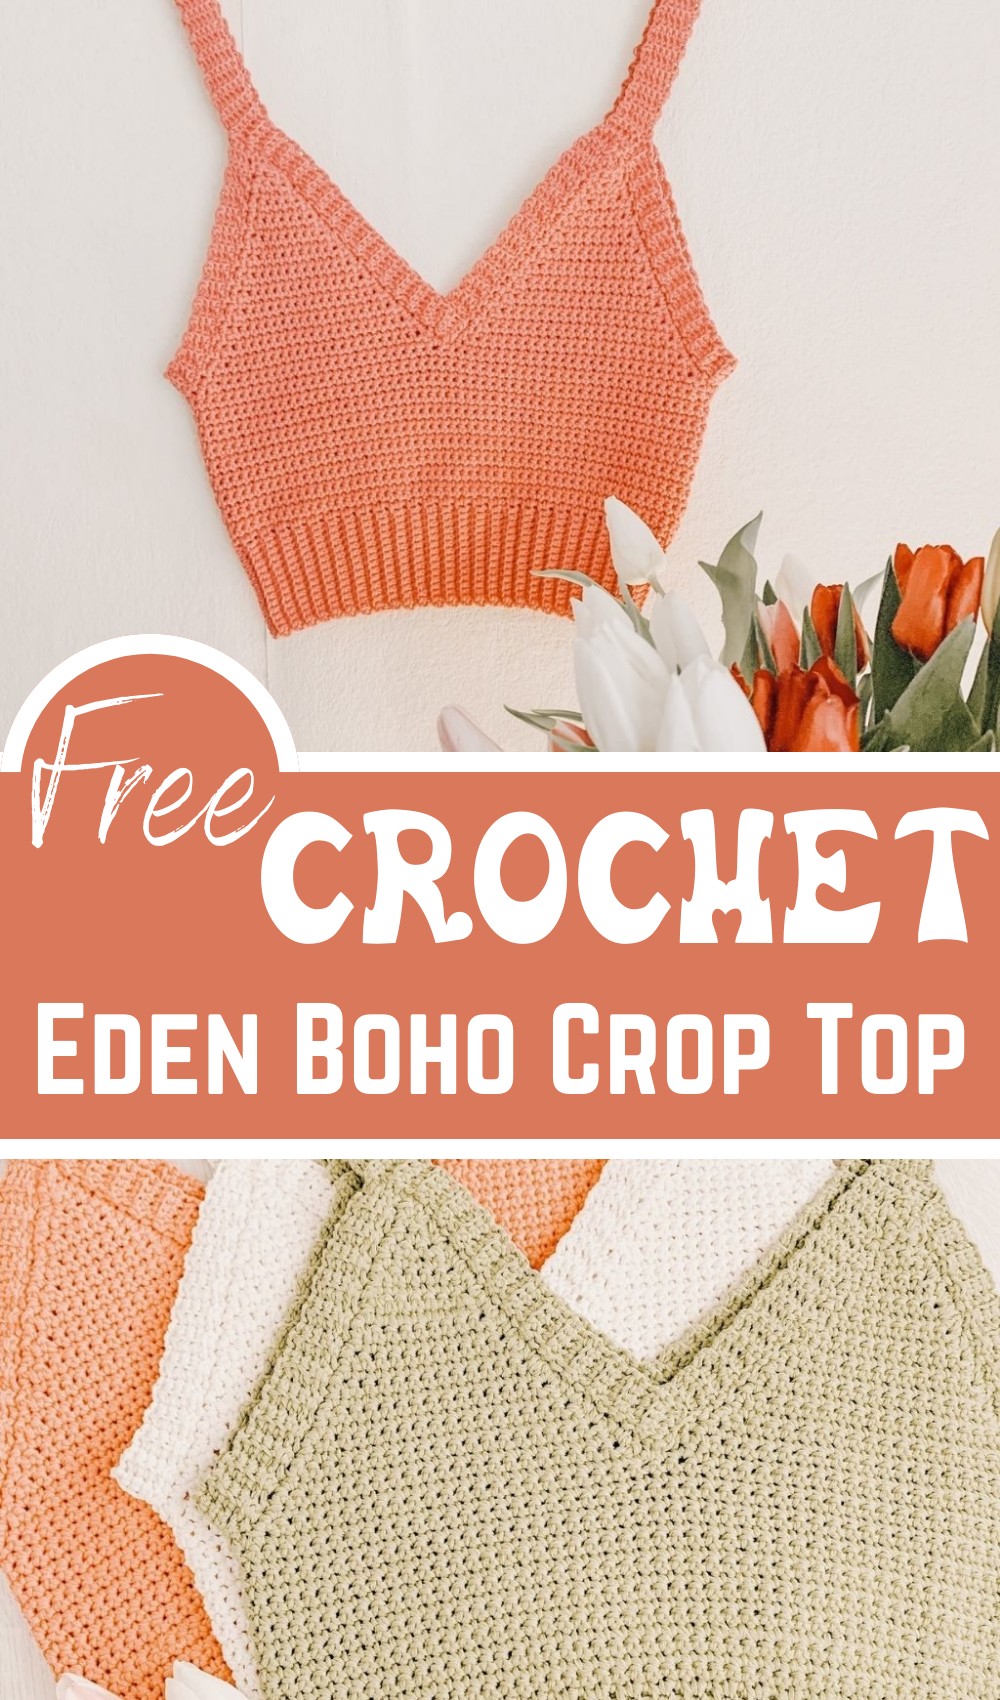 Crochet Eden Boho Crop Top